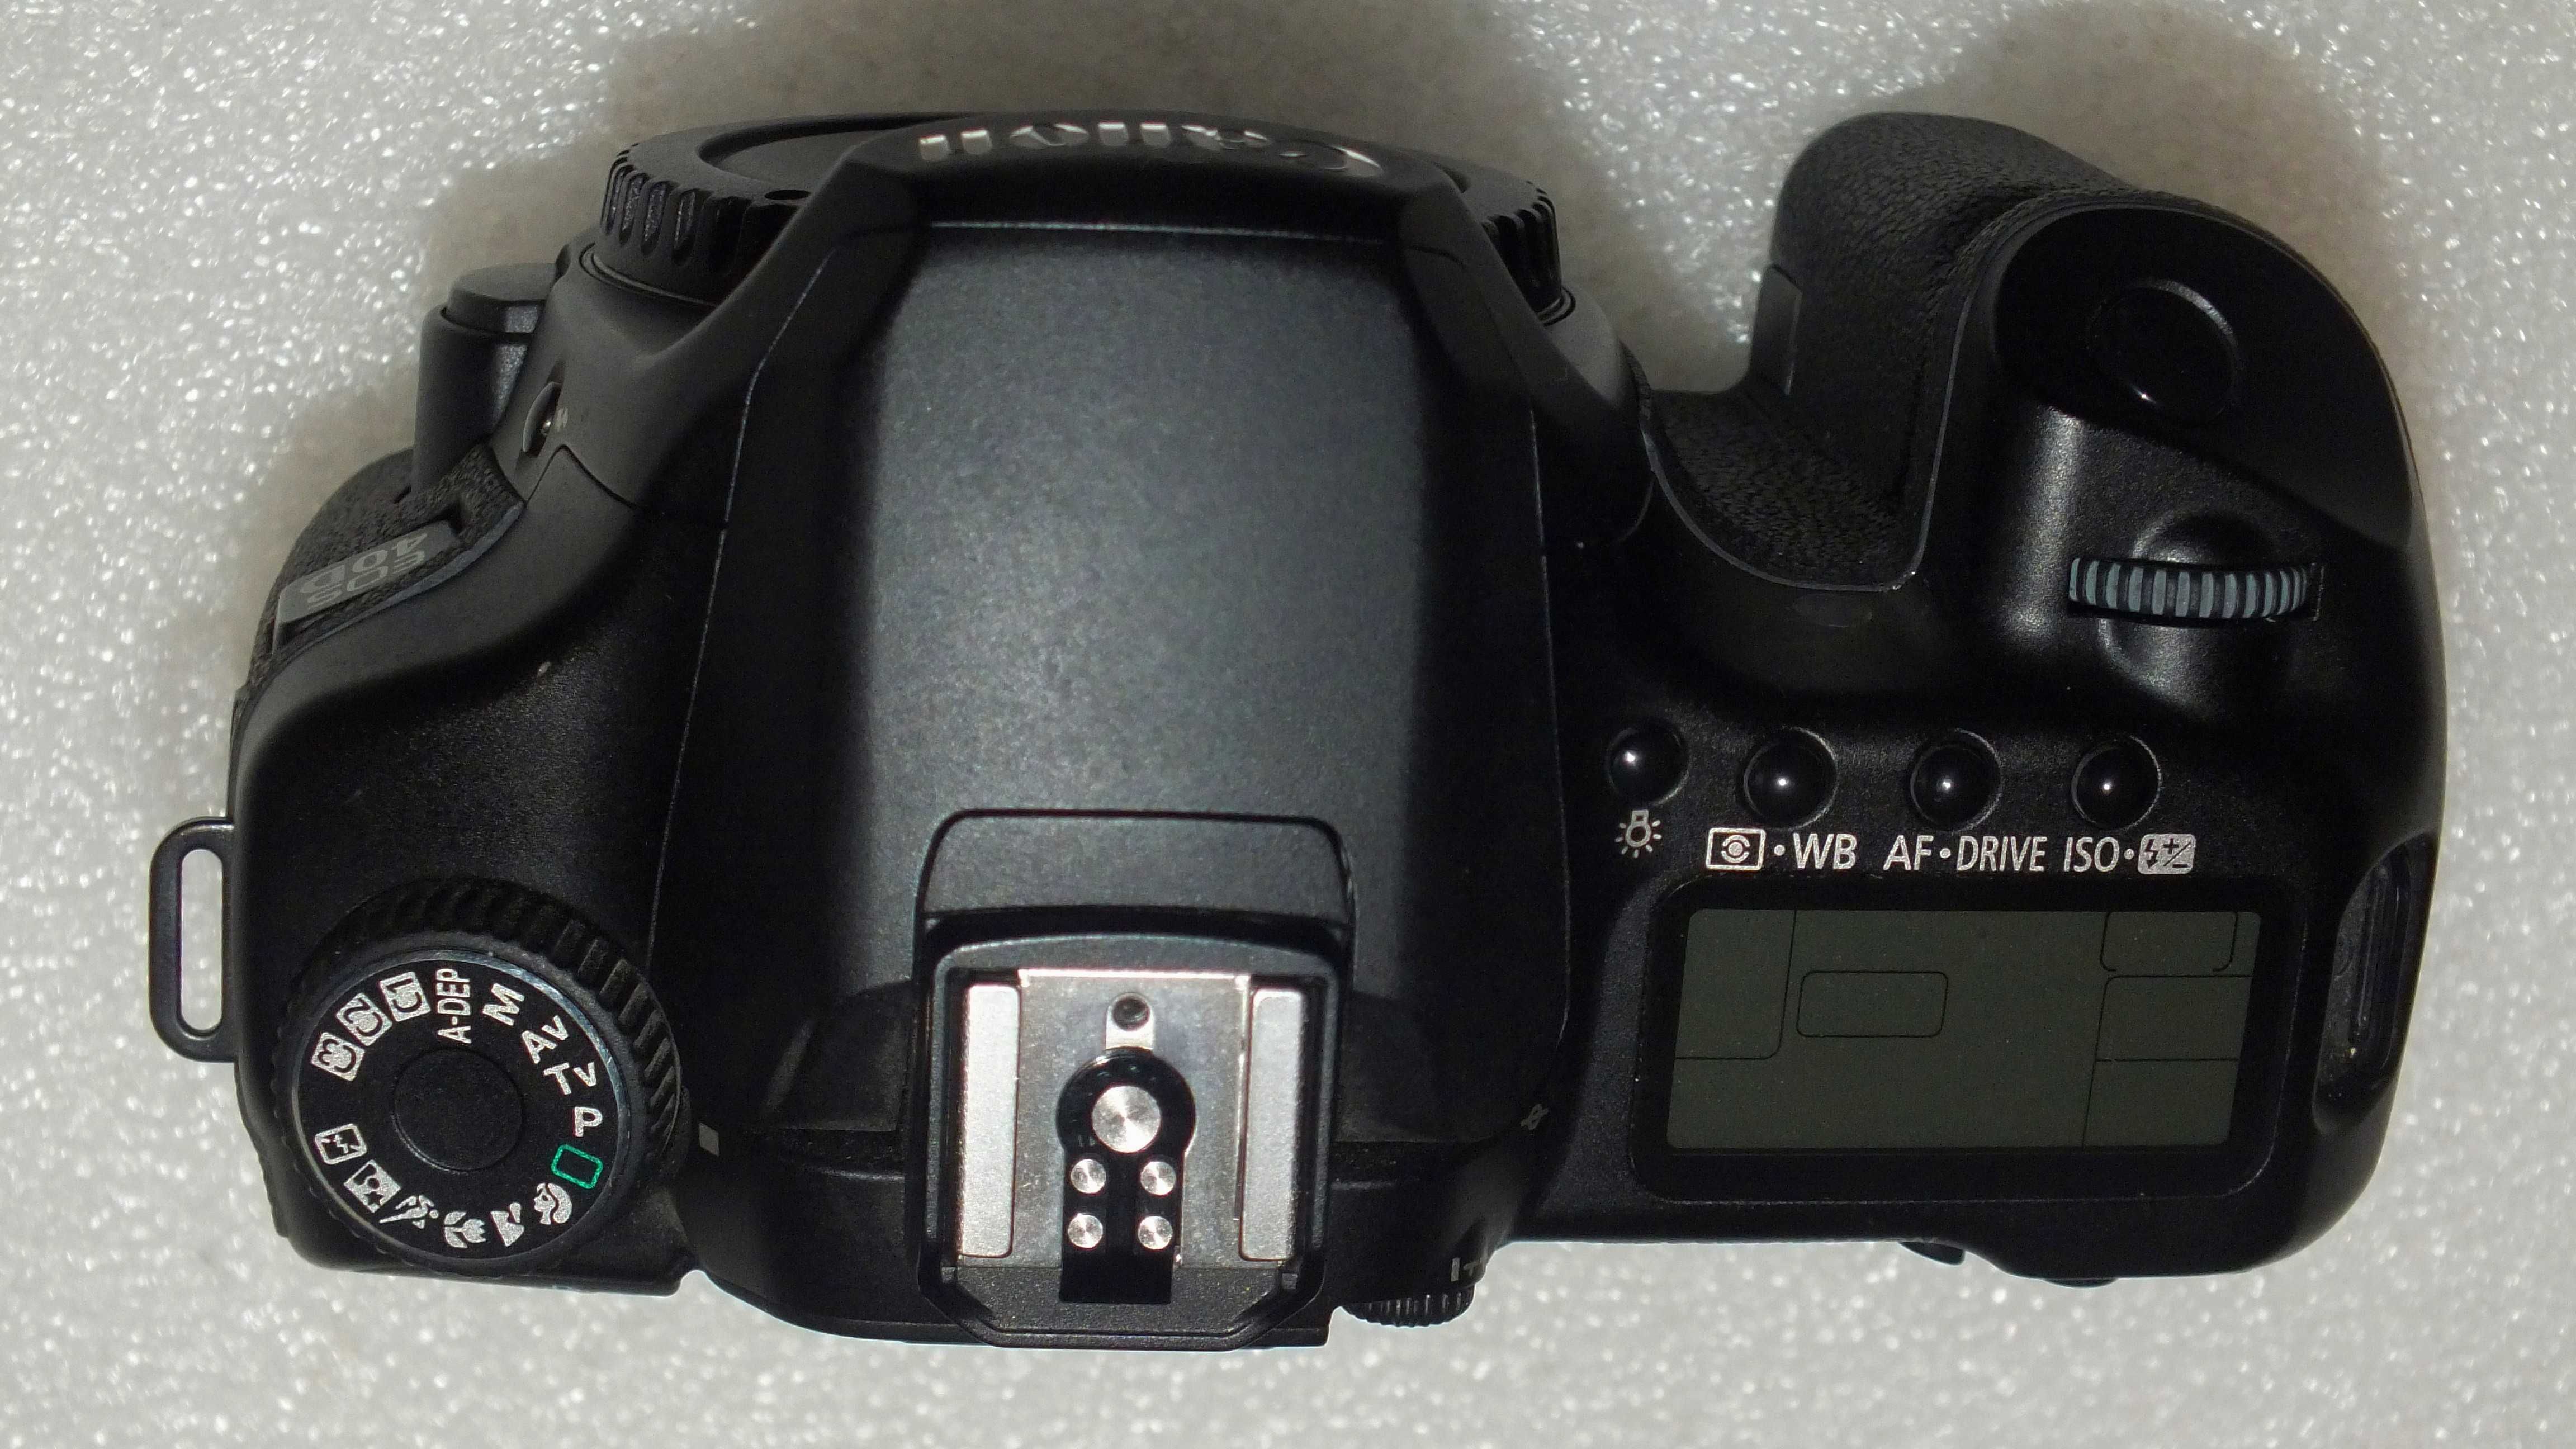 Фотоаппарат Canon 40 D / CMOS APS-C матрица. Возможен обмен